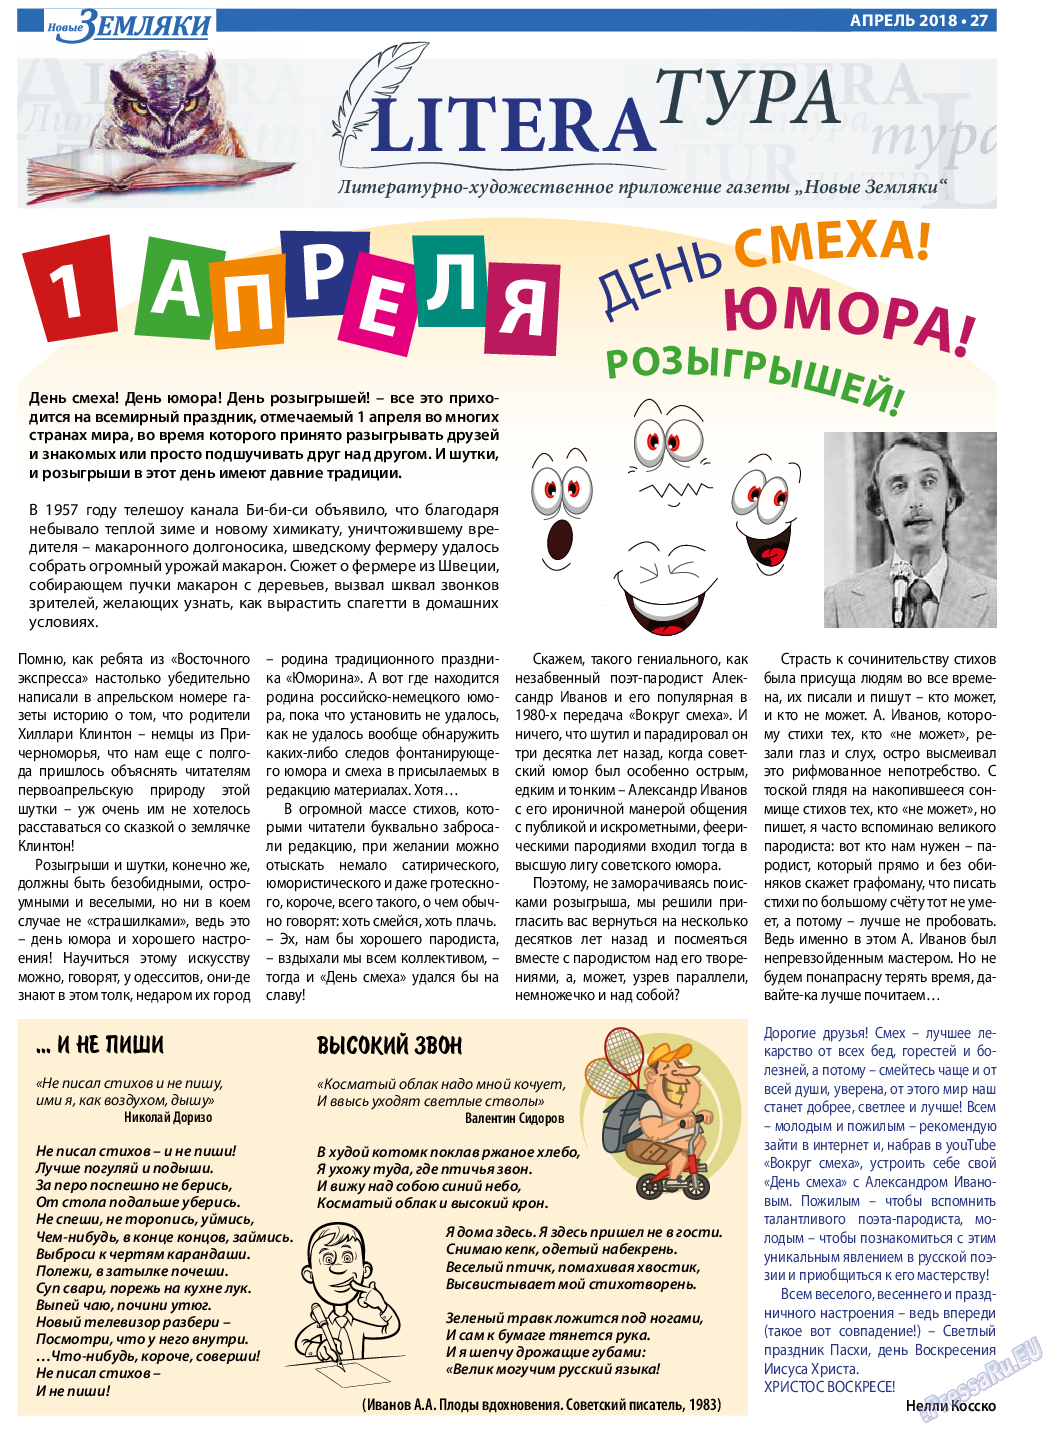 Новые Земляки, газета. 2018 №4 стр.27